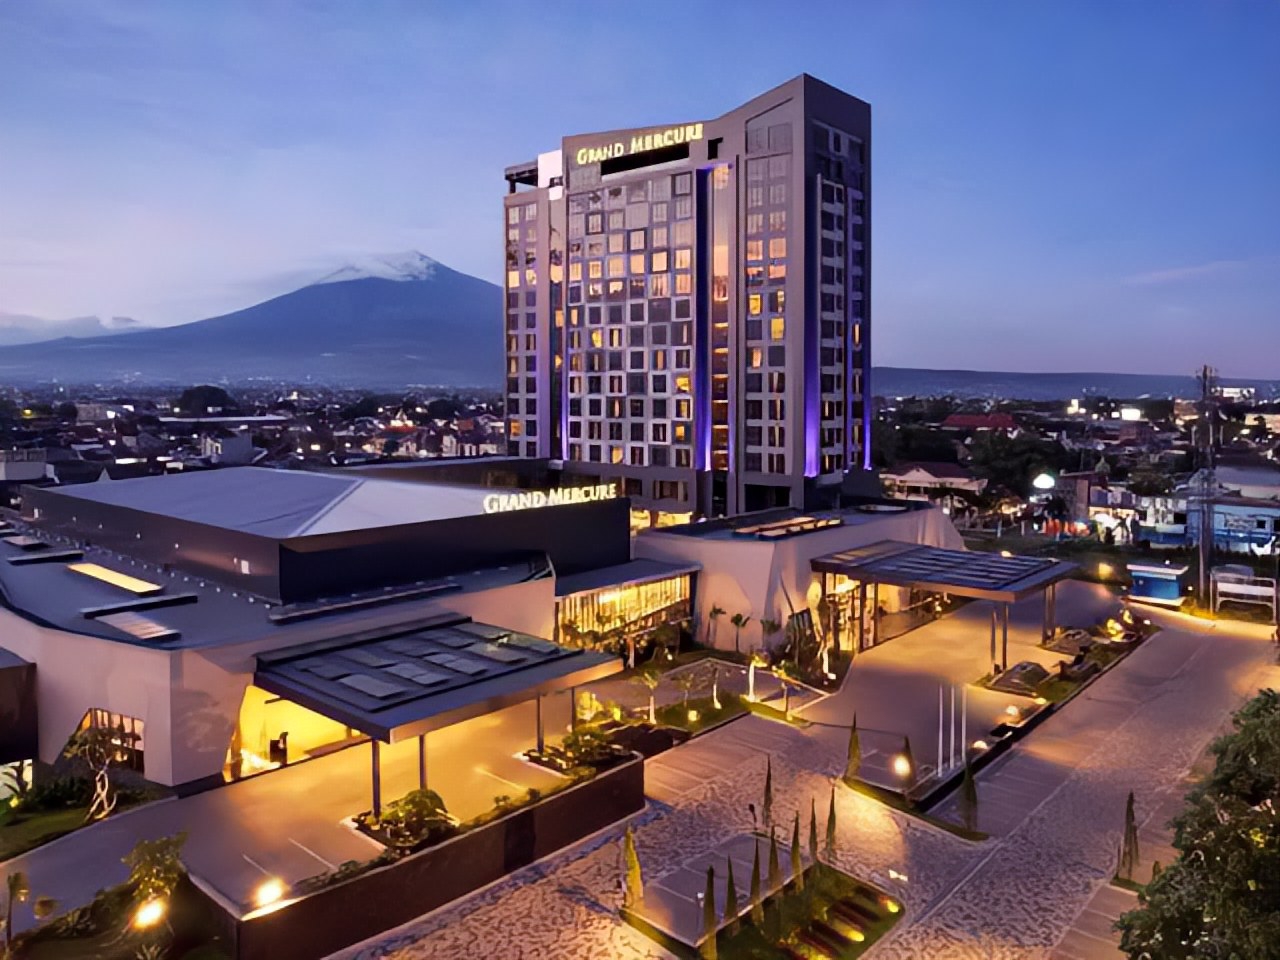 Grand Mercure Malang Mirama, 12 Menit dari Stasiun, Hotel Bintang 5 dengan Segudang Fasilitas Mewah Kelas Atas